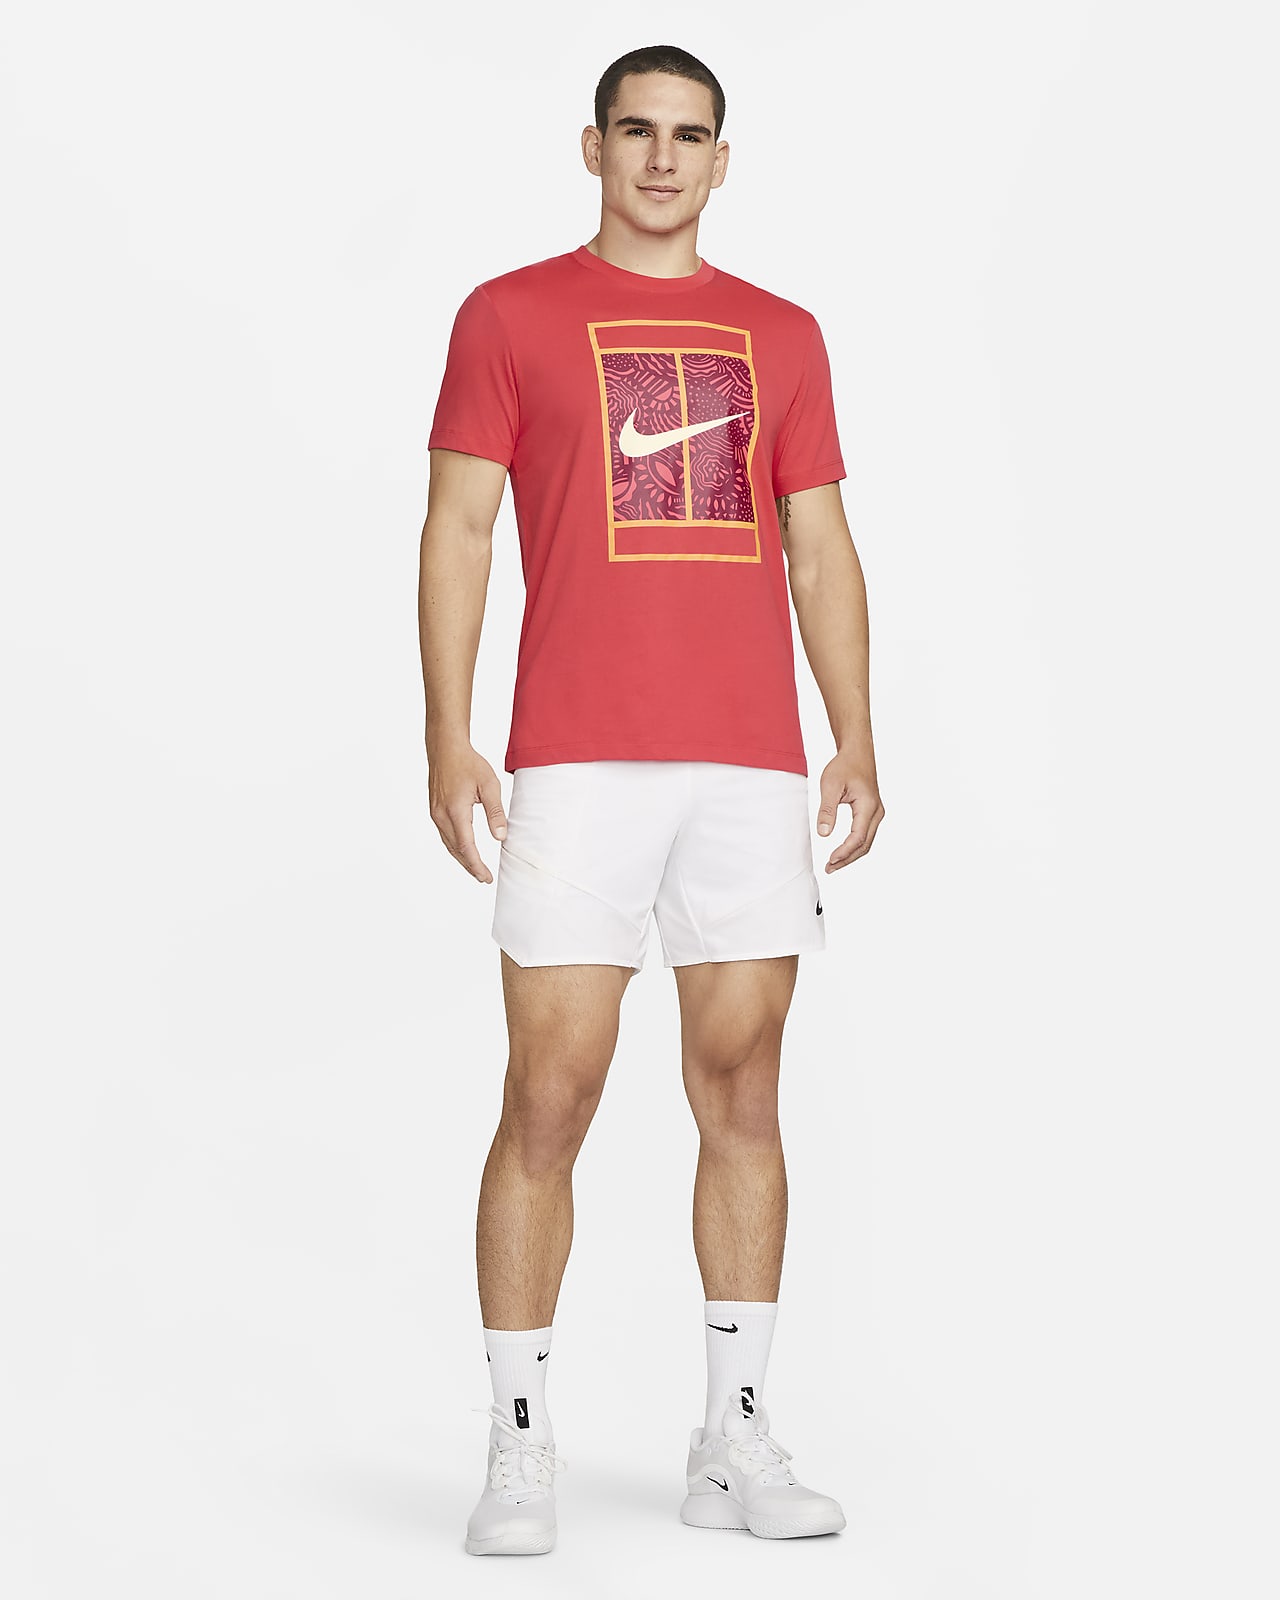 Tee-shirt de tennis homme Nike Court Training Australie coloris orange